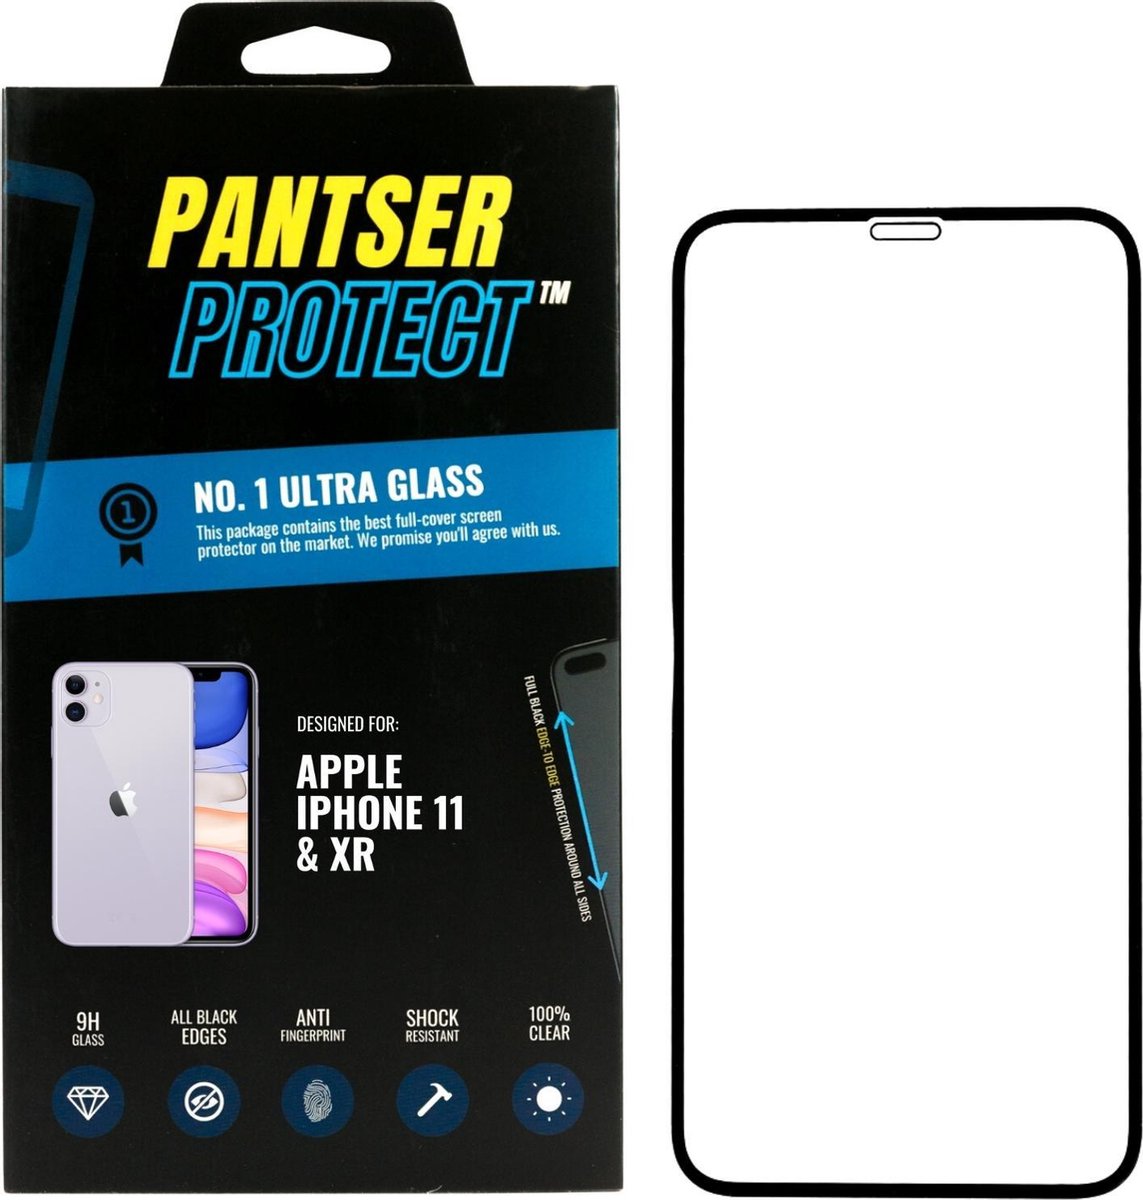 Pantser Protect ™ Case Friendly Screenprotector Geschikt voor Apple iPhone 11 / XR - Premium glazen full-cover Pantserglas Protector - Tempered Glass Bescherm Glas